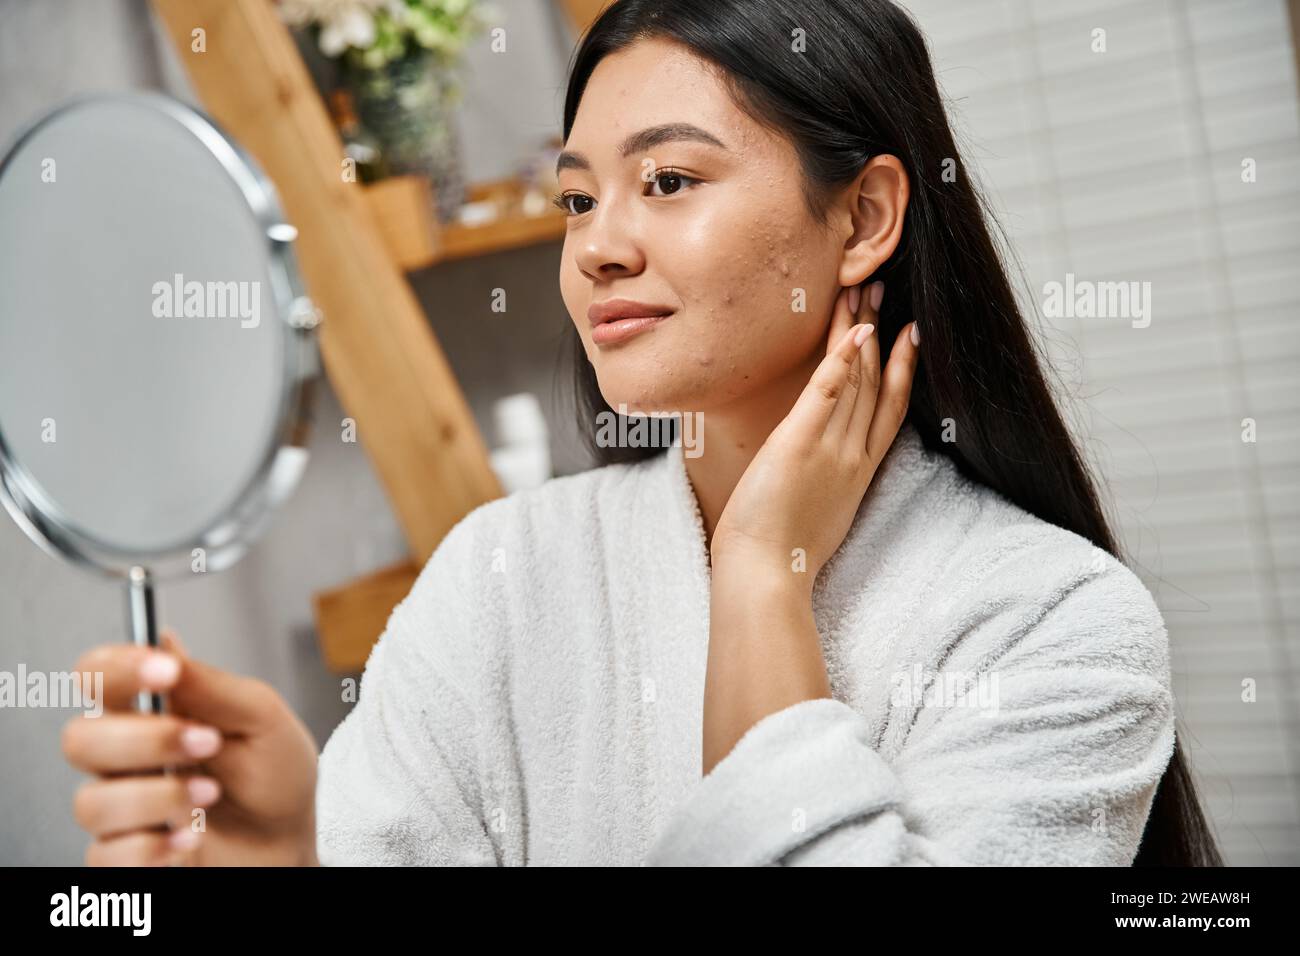 Porträt einer Brünette und jungen asiatischen Frau mit Makeln, die in den Spiegel im modernen Badezimmer blicken Stockfoto